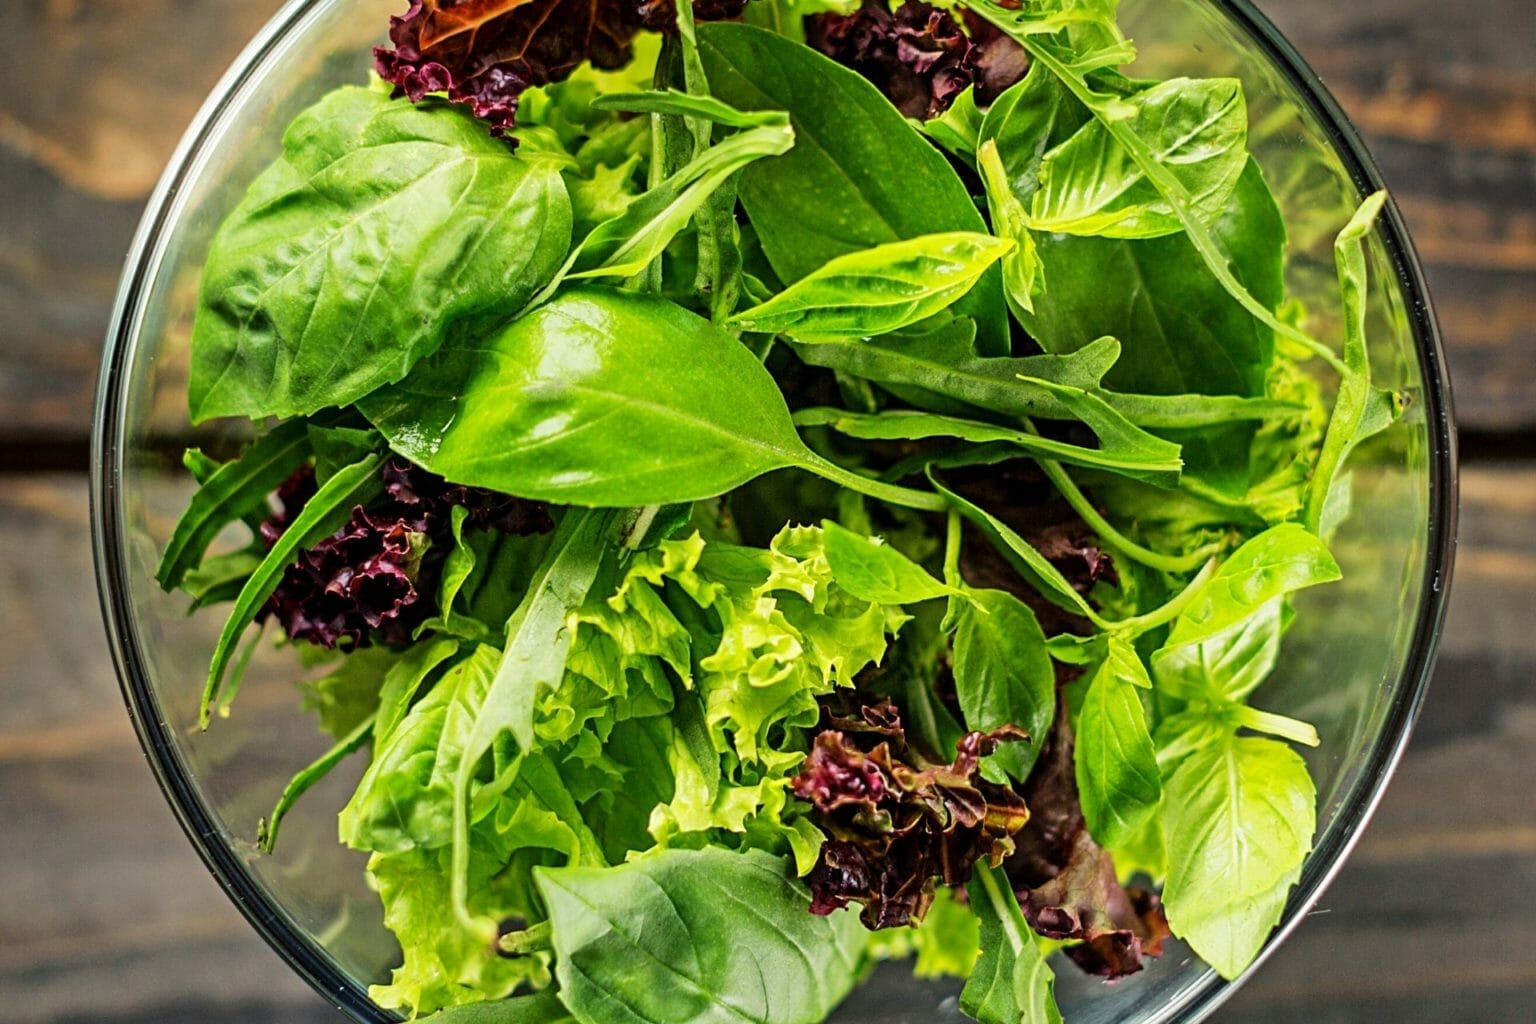 Kidney Diet Salad Recipes for Summer | RenalTracker Blog